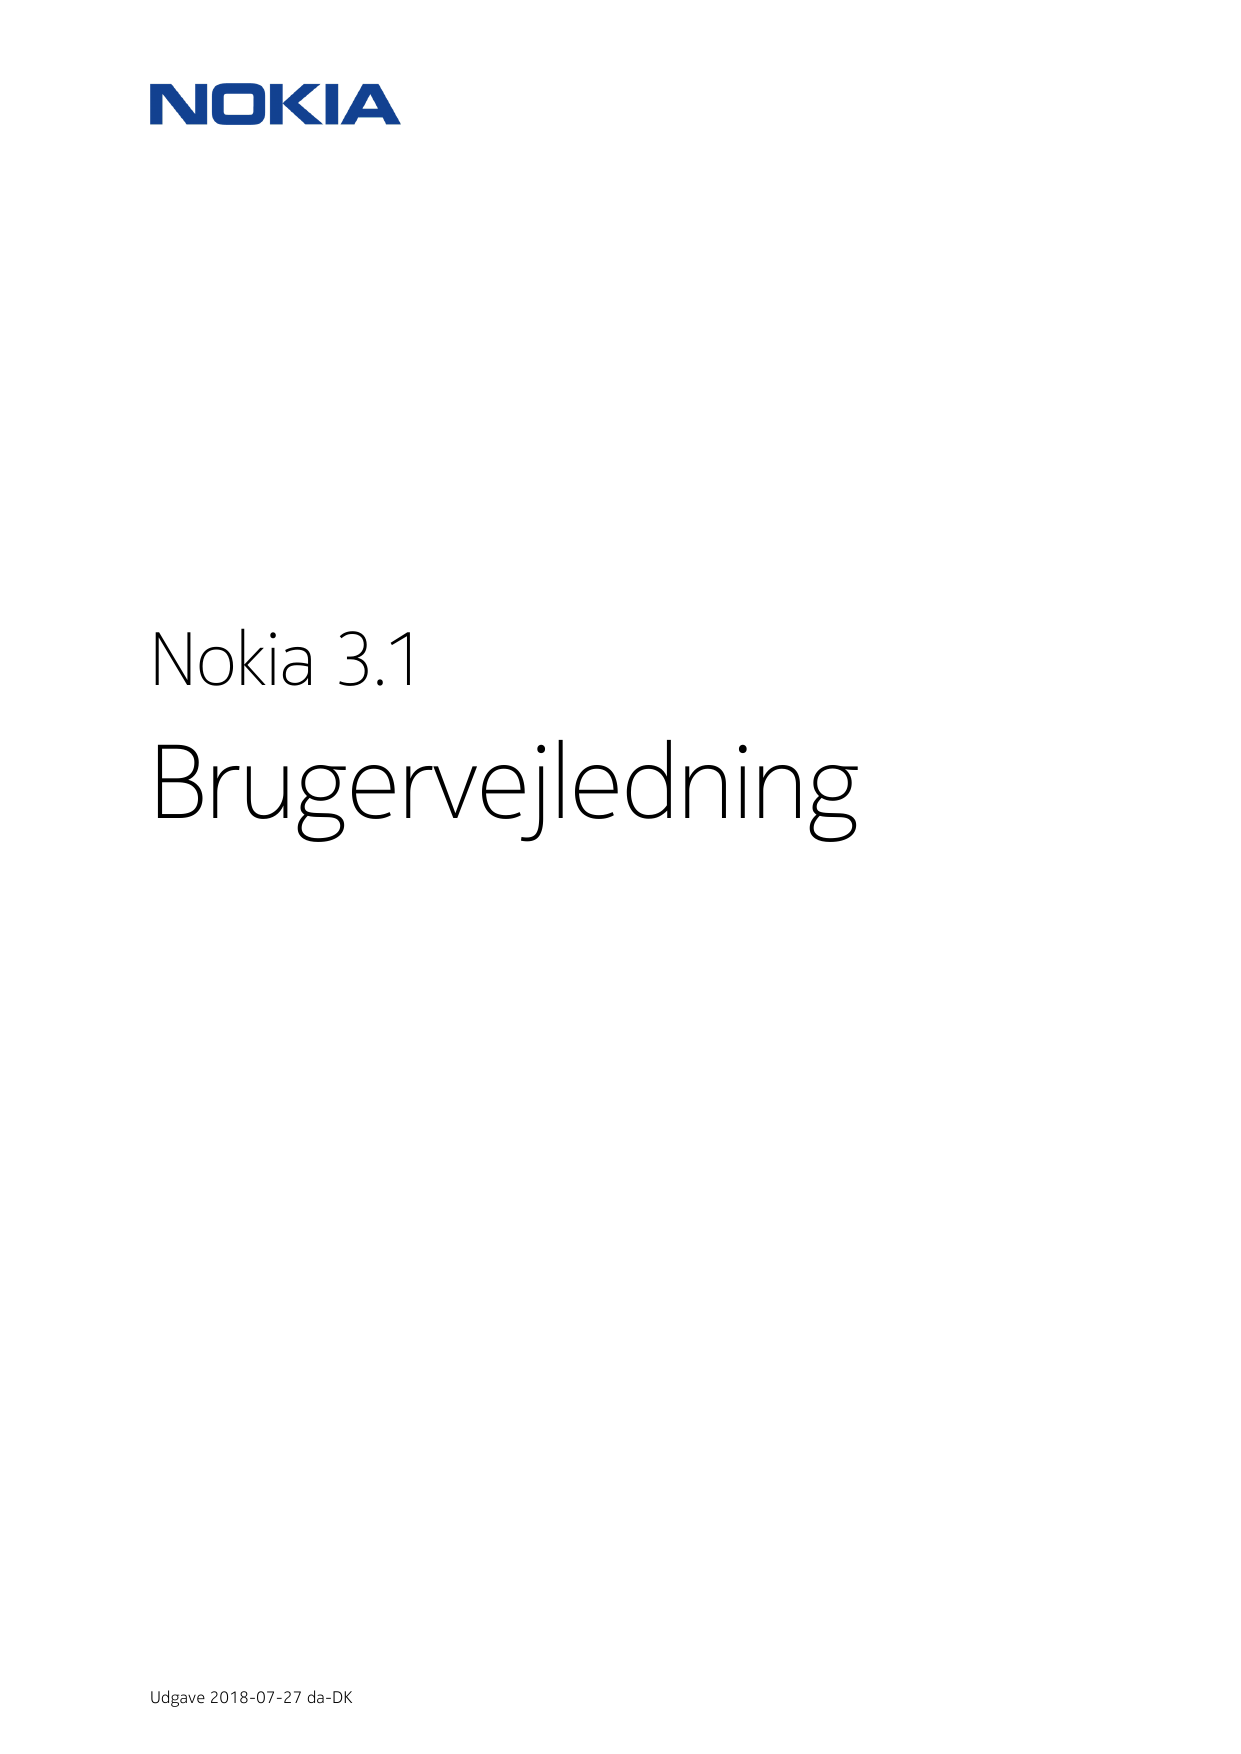 Nokia 3.1BrugervejledningUdgave 2018-07-27 da-DK